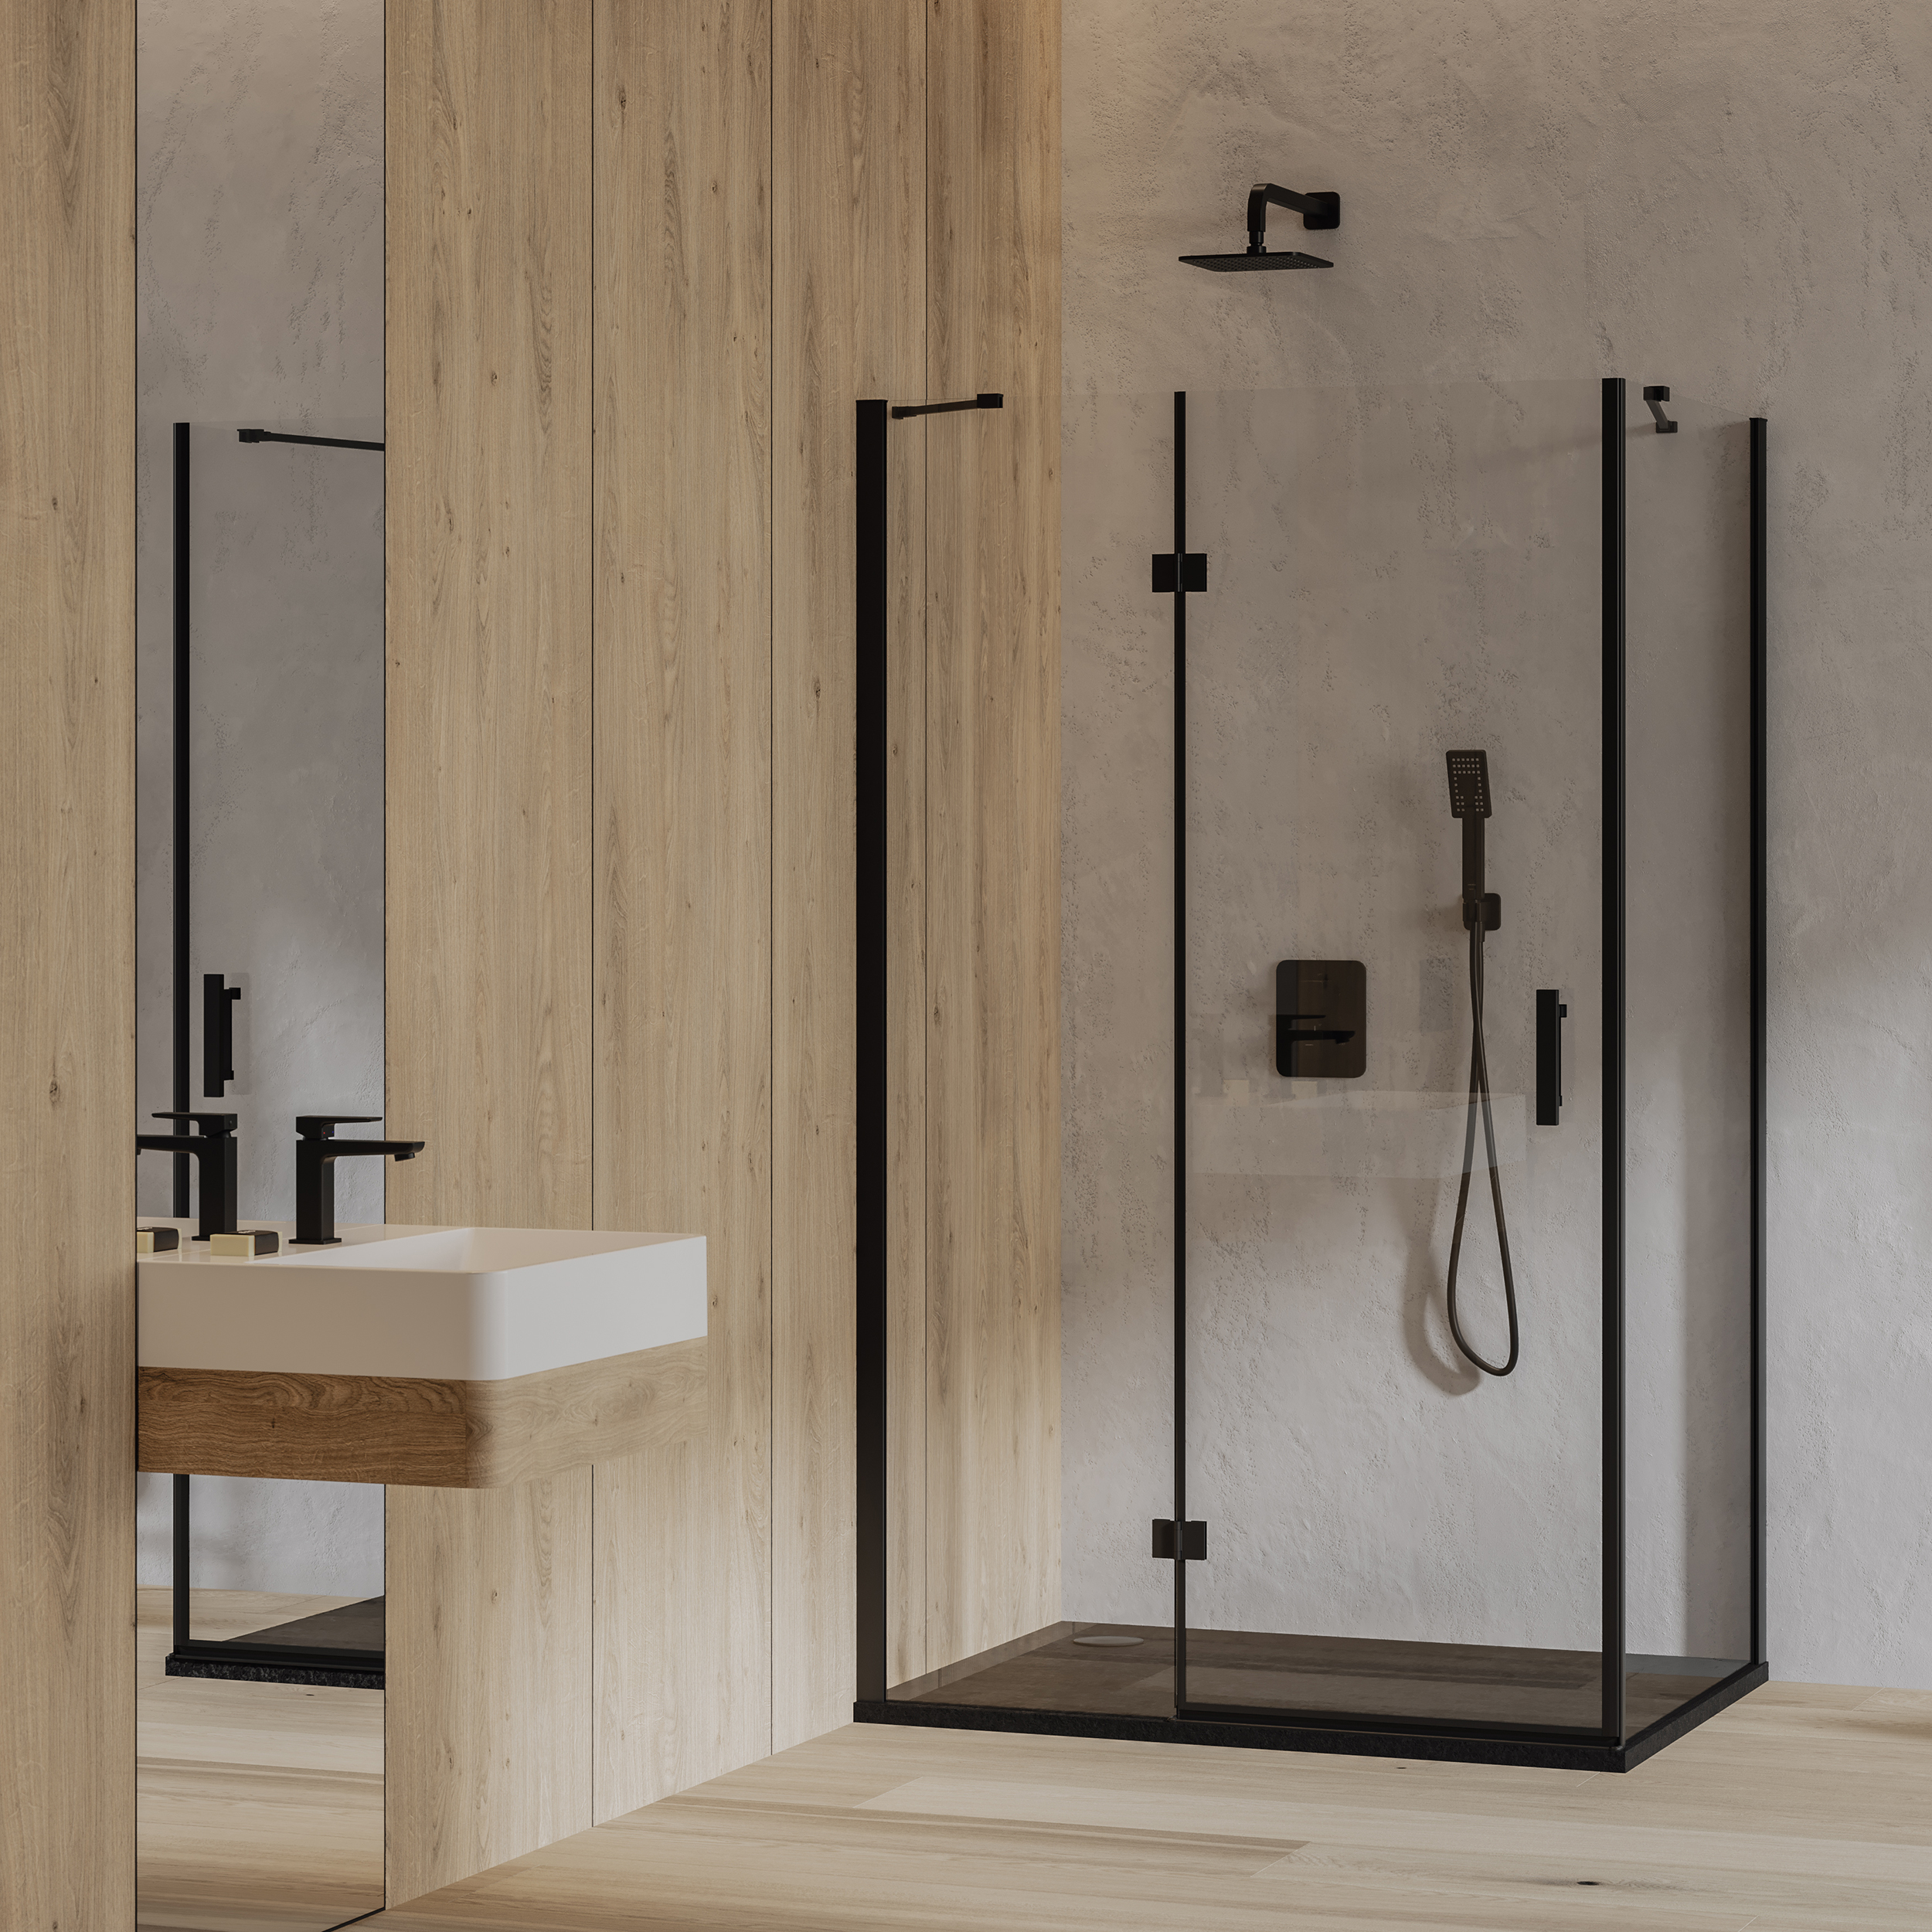 Łazienka z płytkami imitującymi drewno i beton, kabiną prysznicową z czarnymi mocowaniami, umywalką ścienną i podłużnym lustrem